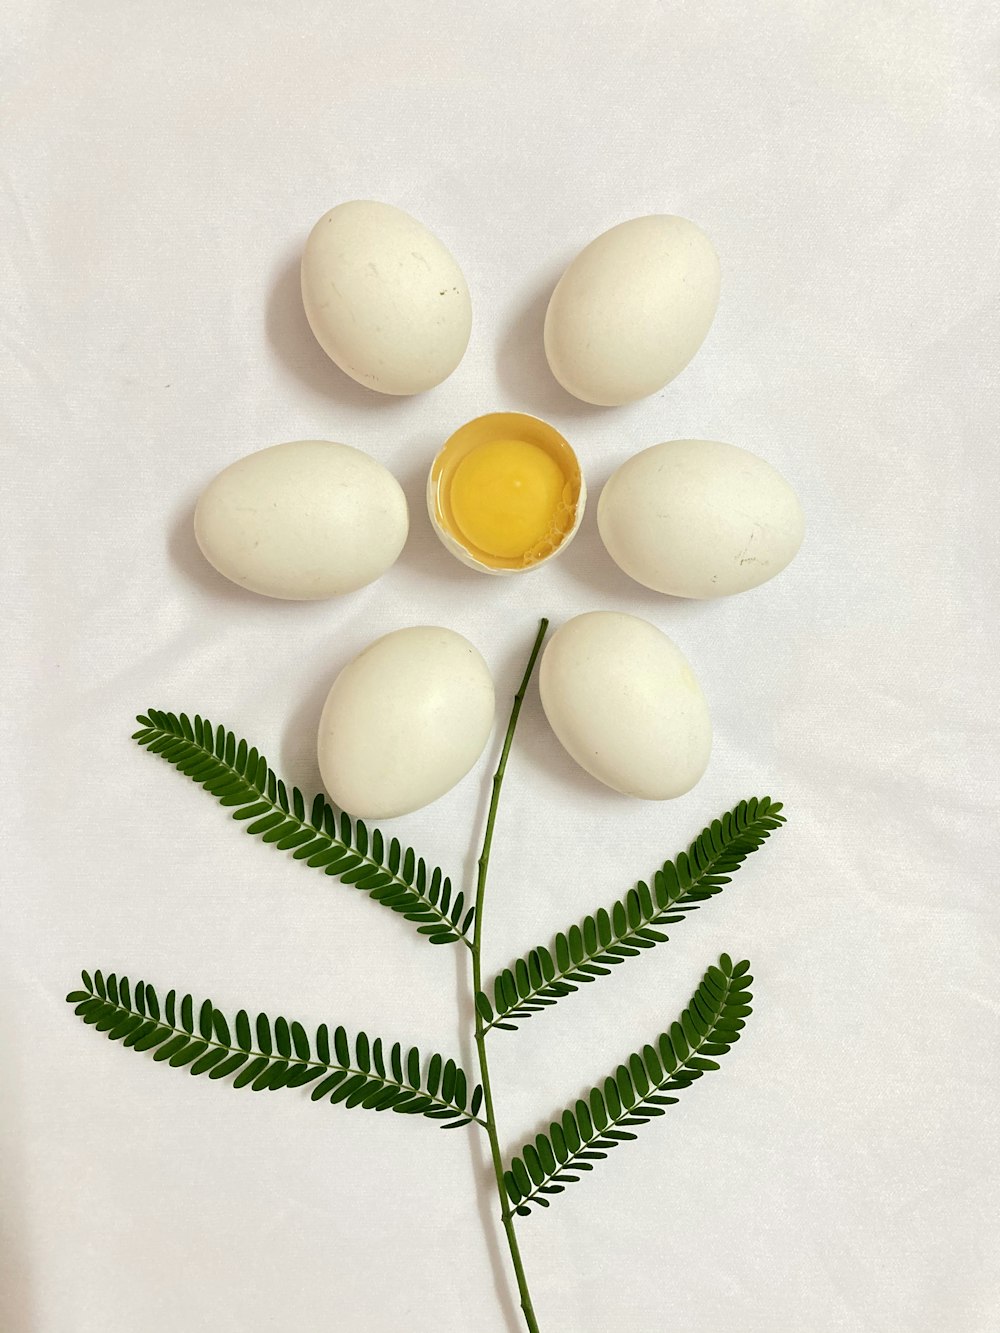 œuf blanc à côté des feuilles vertes